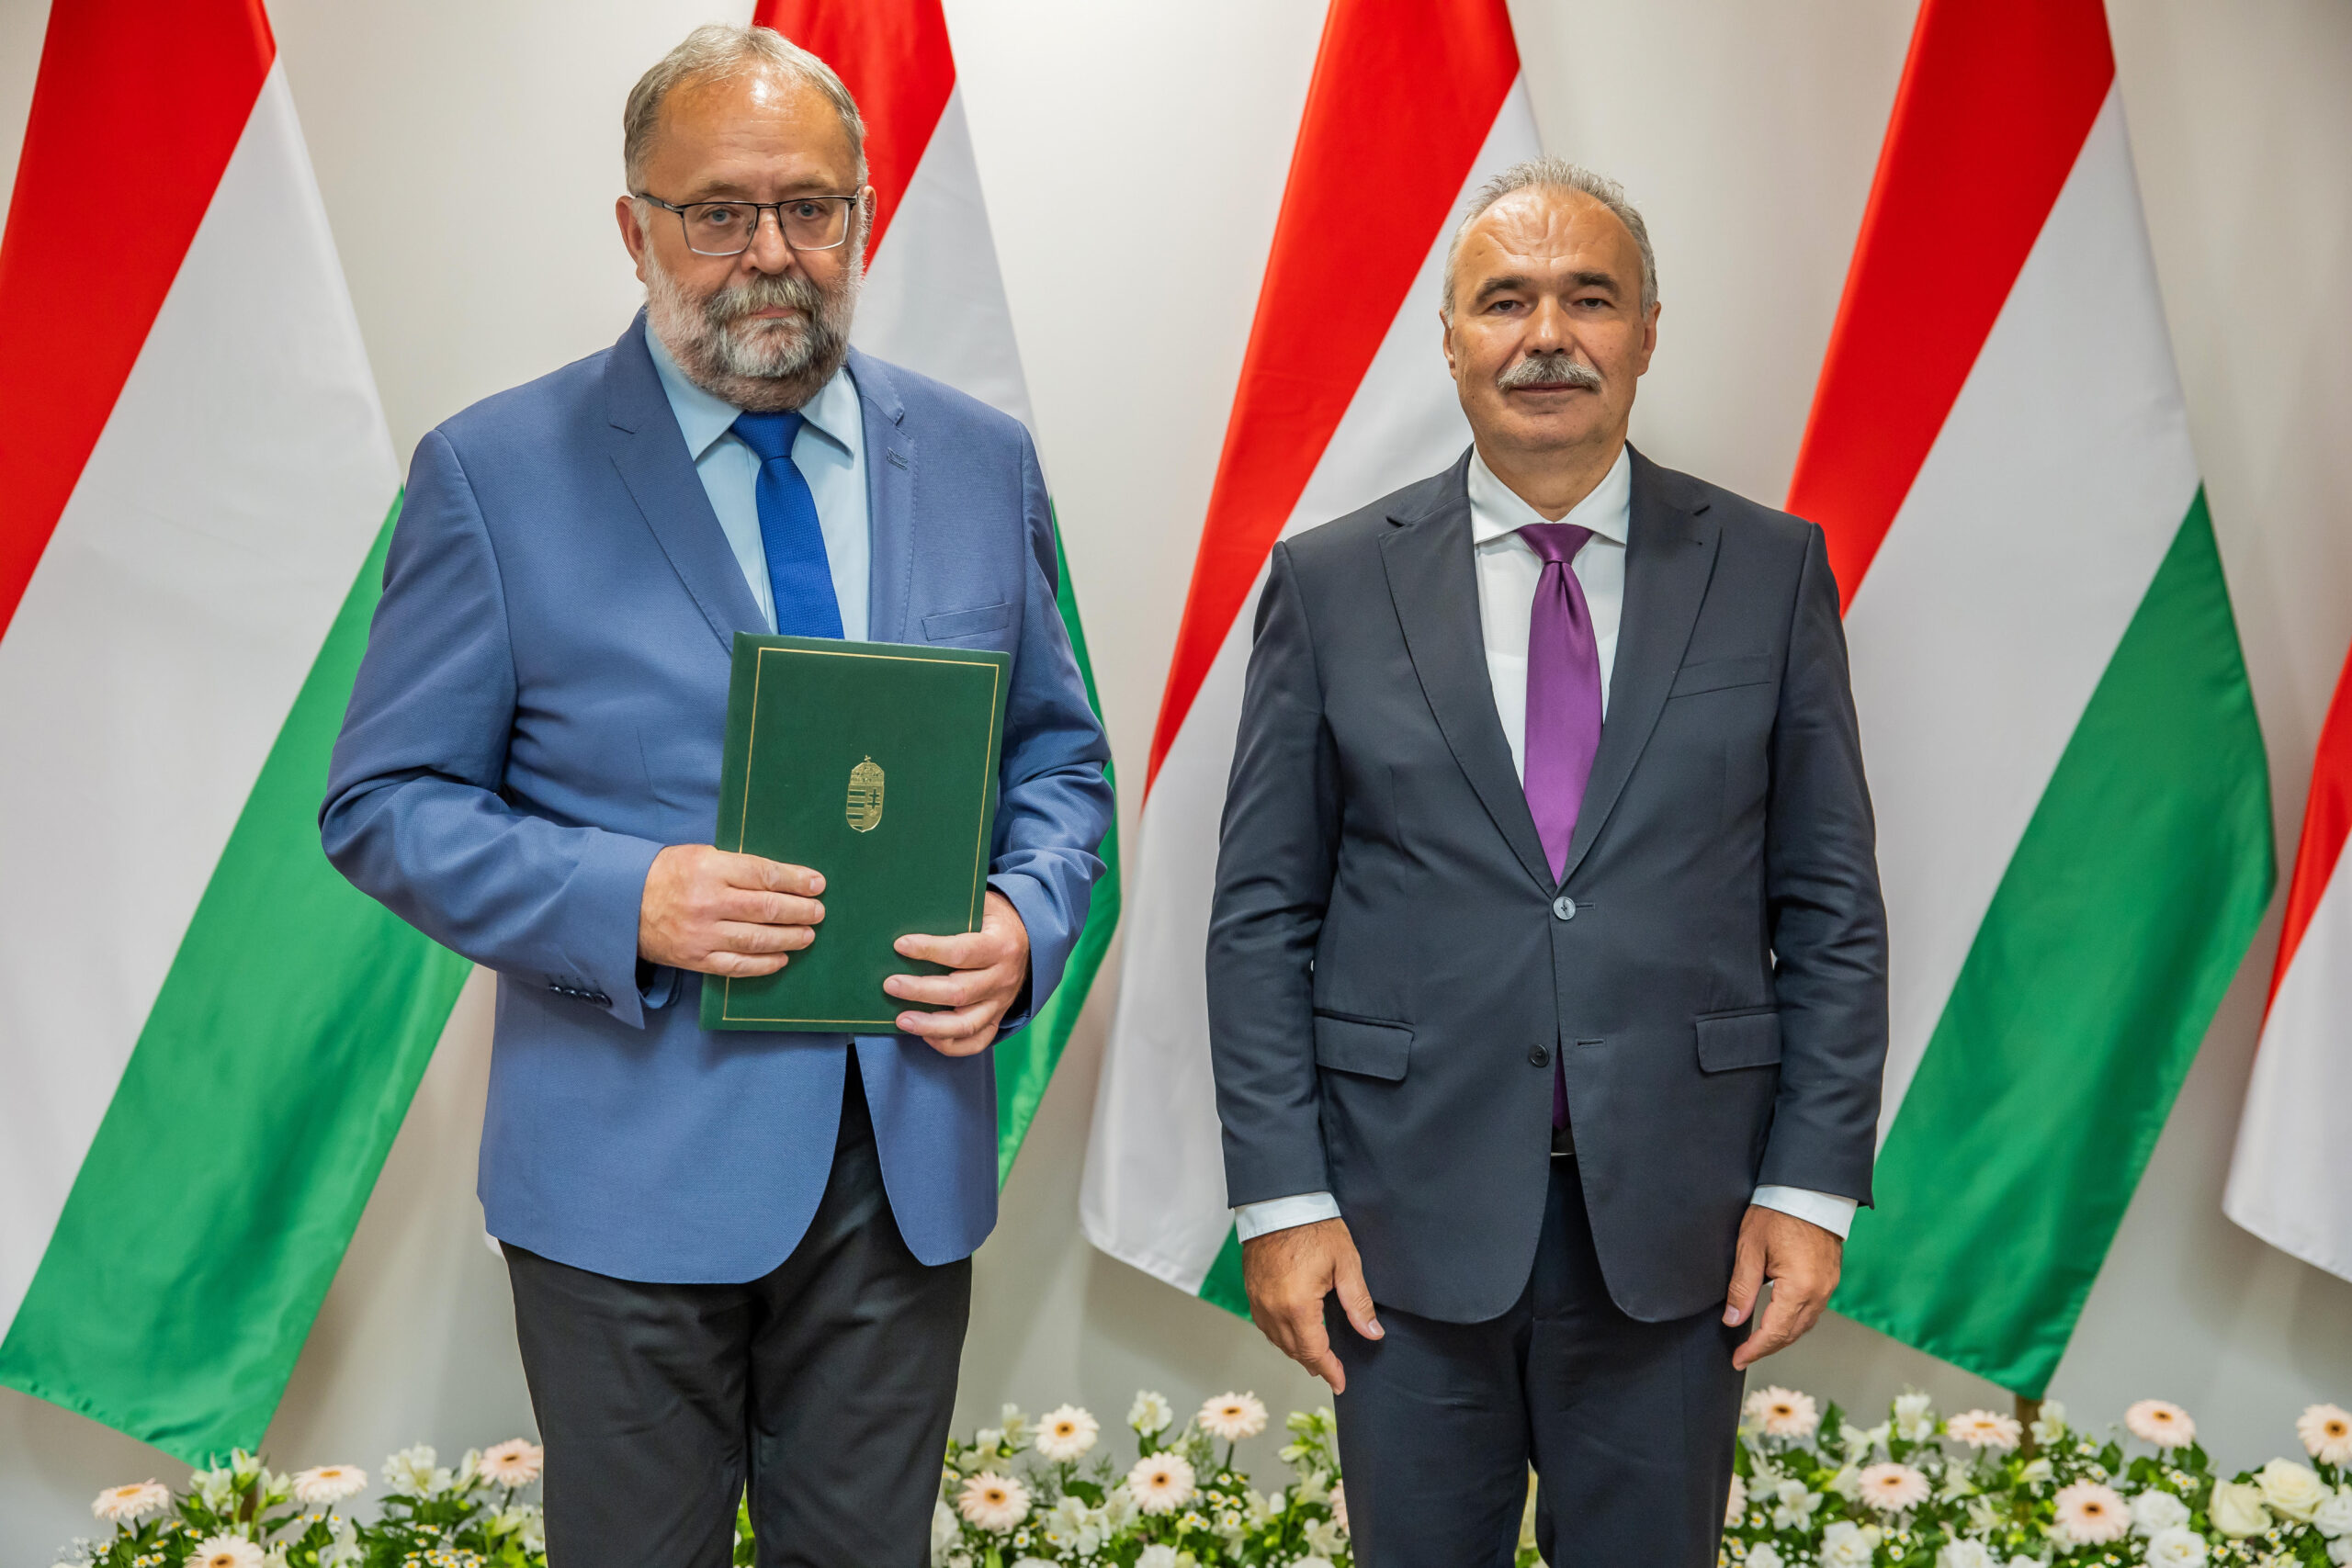 Két férfi áll egymás mellett a magyar zászlókat ábrázoló háttér előtt. A bal oldali férfi egy zöld, arany emblémával ellátott mappát tart, míg a jobb oldali férfi az oldala mellett tartja a kezét. Mindketten öltönyt viselnek; a bal férfi kék nyakkendőt, a jobb lila nyakkendőt visel.